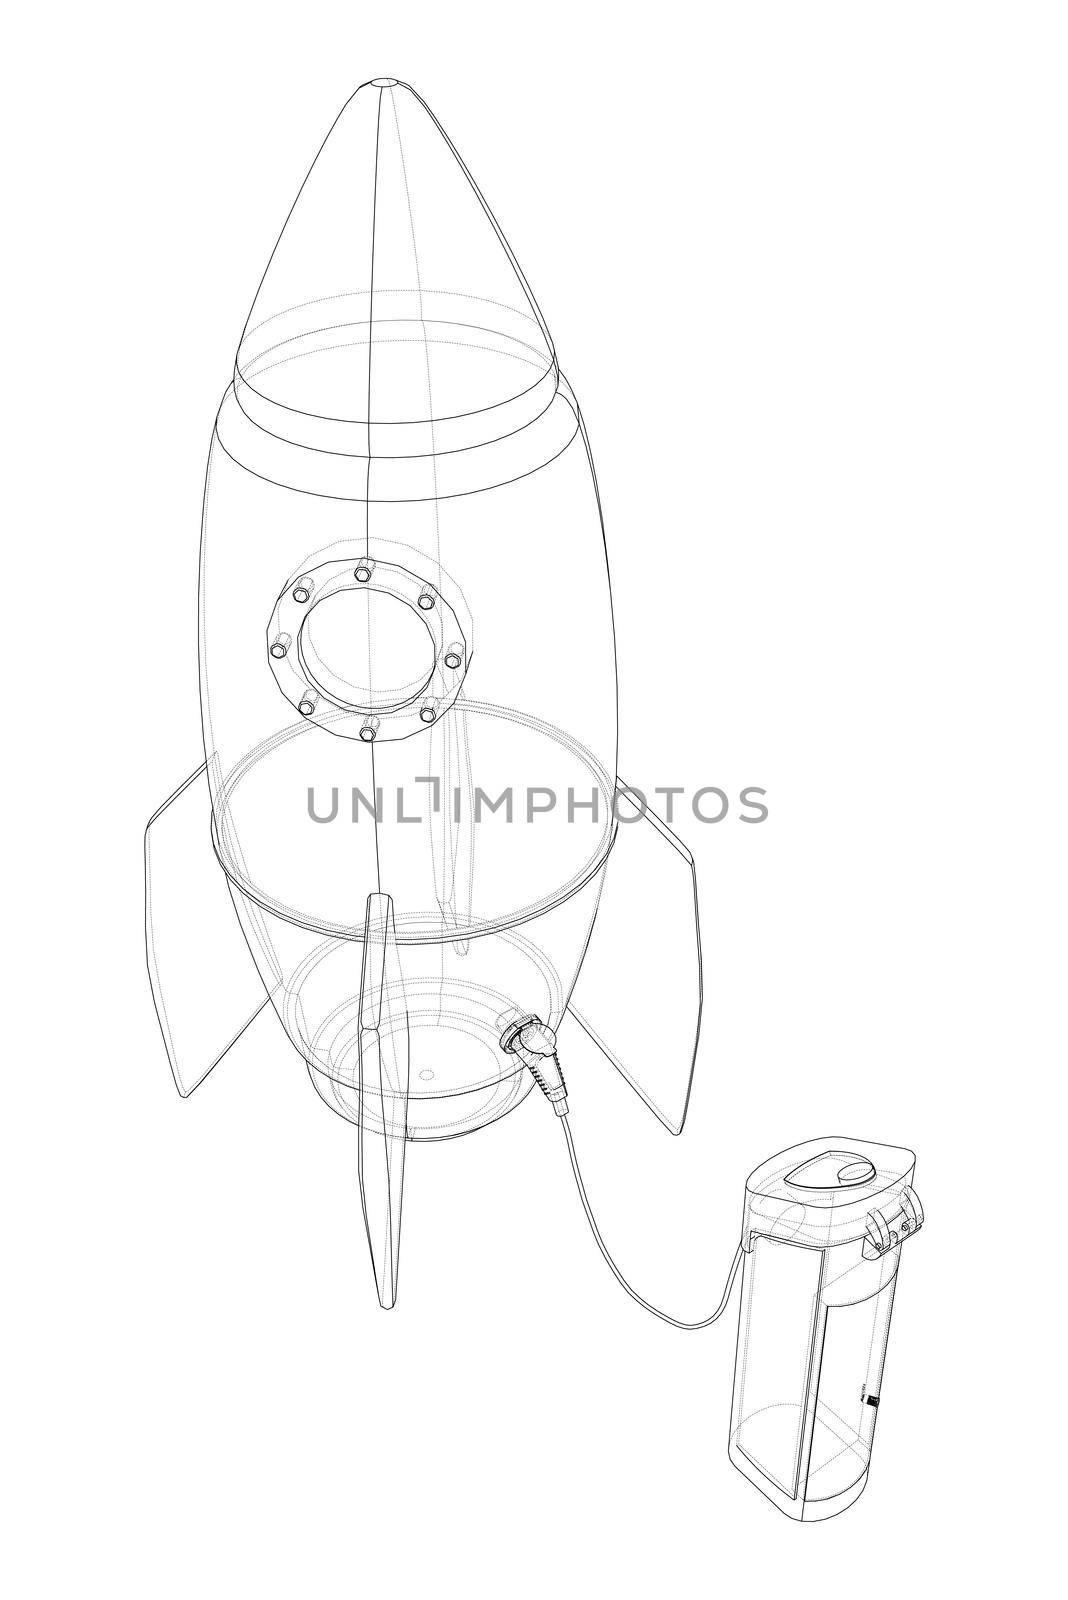 Electric Rocket Charging Station Sketch. 3d illustration